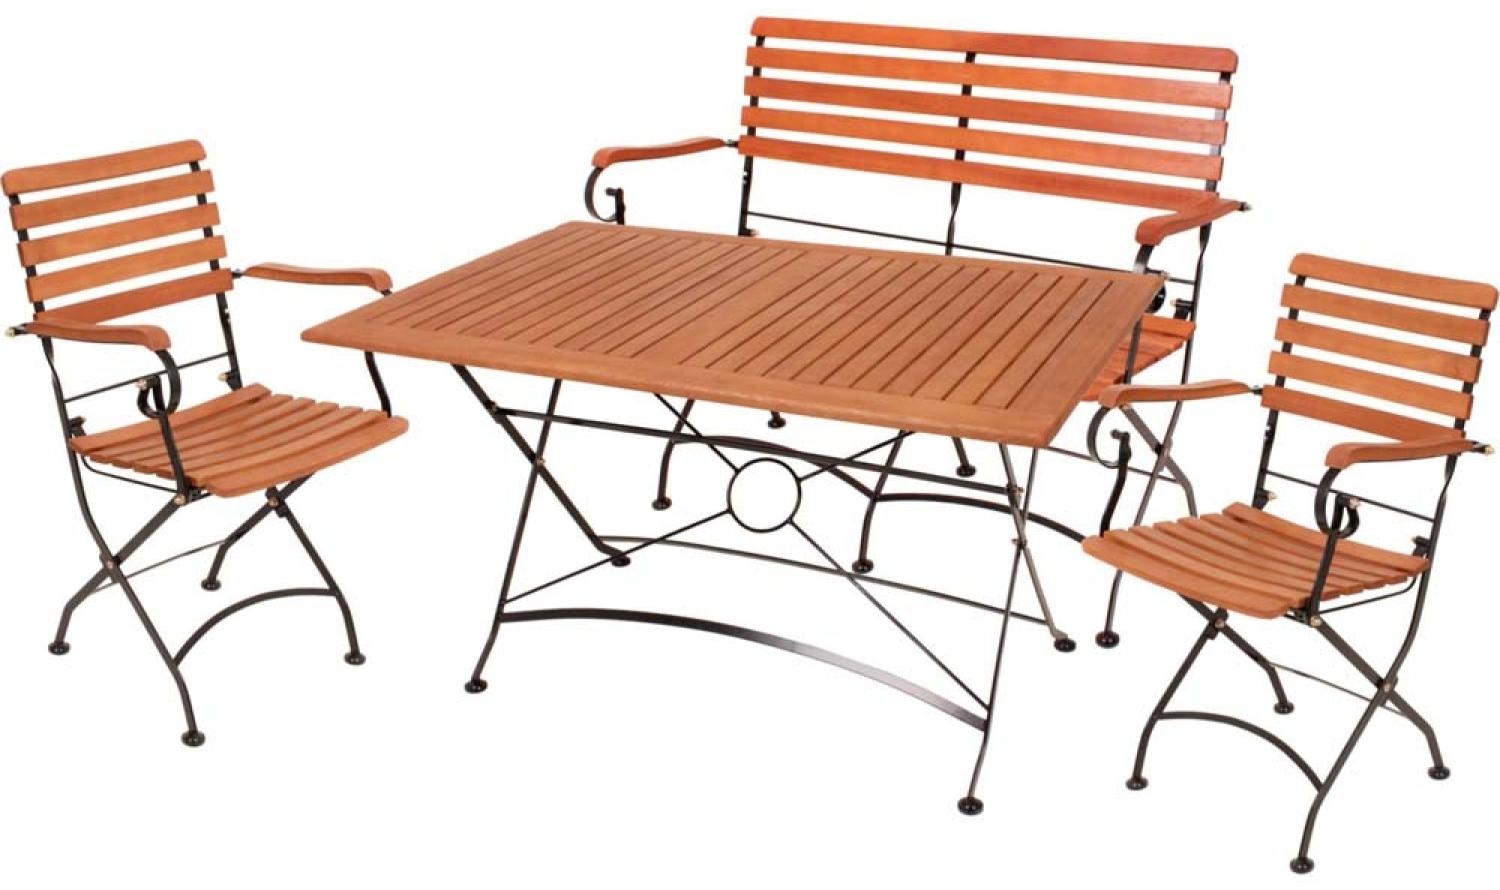 Tischgruppe WIEN, 4 teilig, Tisch, 2 Stühle, Bank, Eukalyptus Bild 1